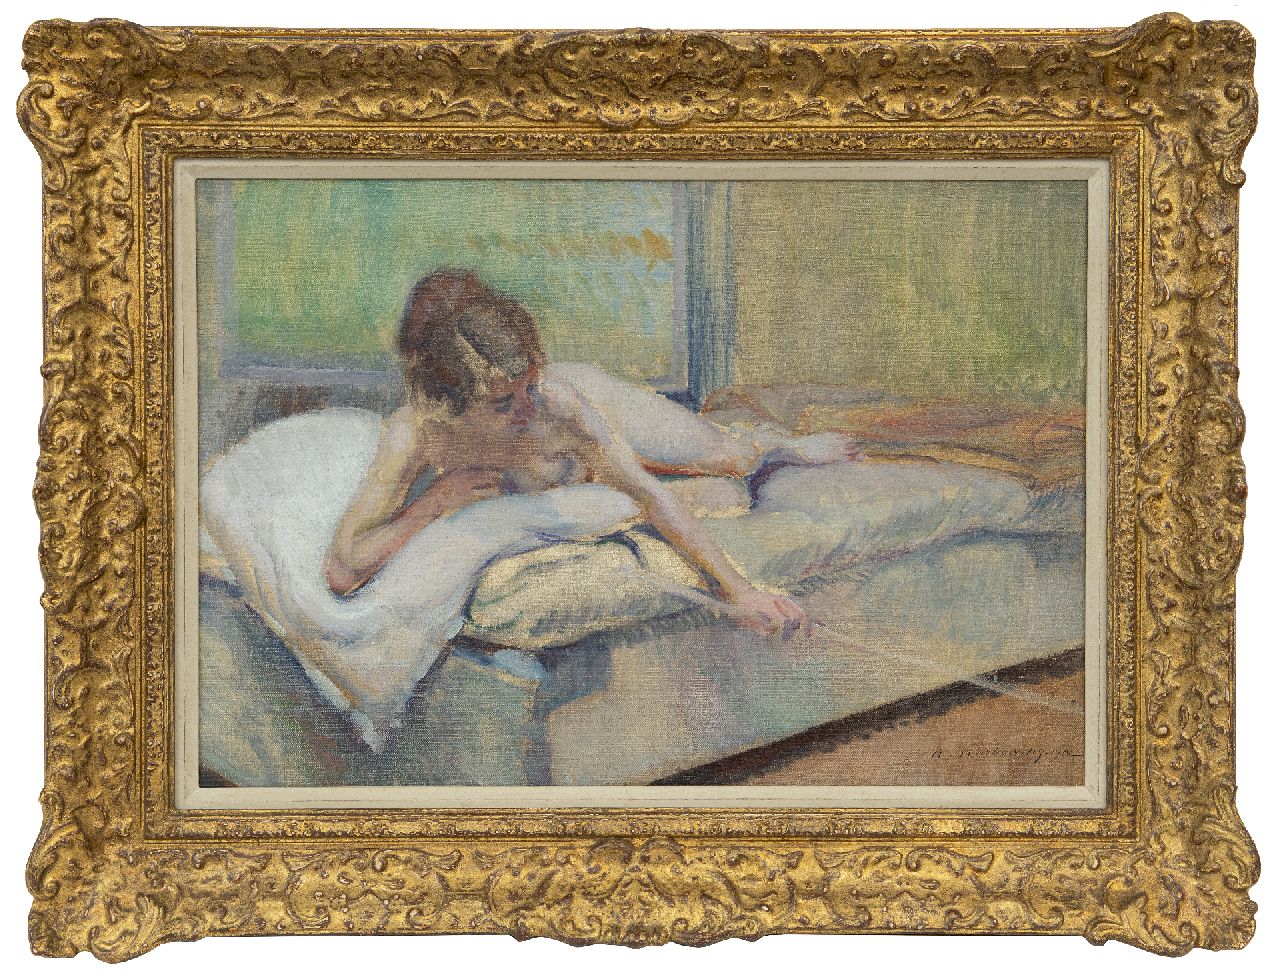 Karbowsky A.  | Adrien Karbowsky, Vrouwelijk naakt op een bed, olieverf op doek 38,3 x 55,1 cm, gesigneerd rechtsonder en gedateerd 1912